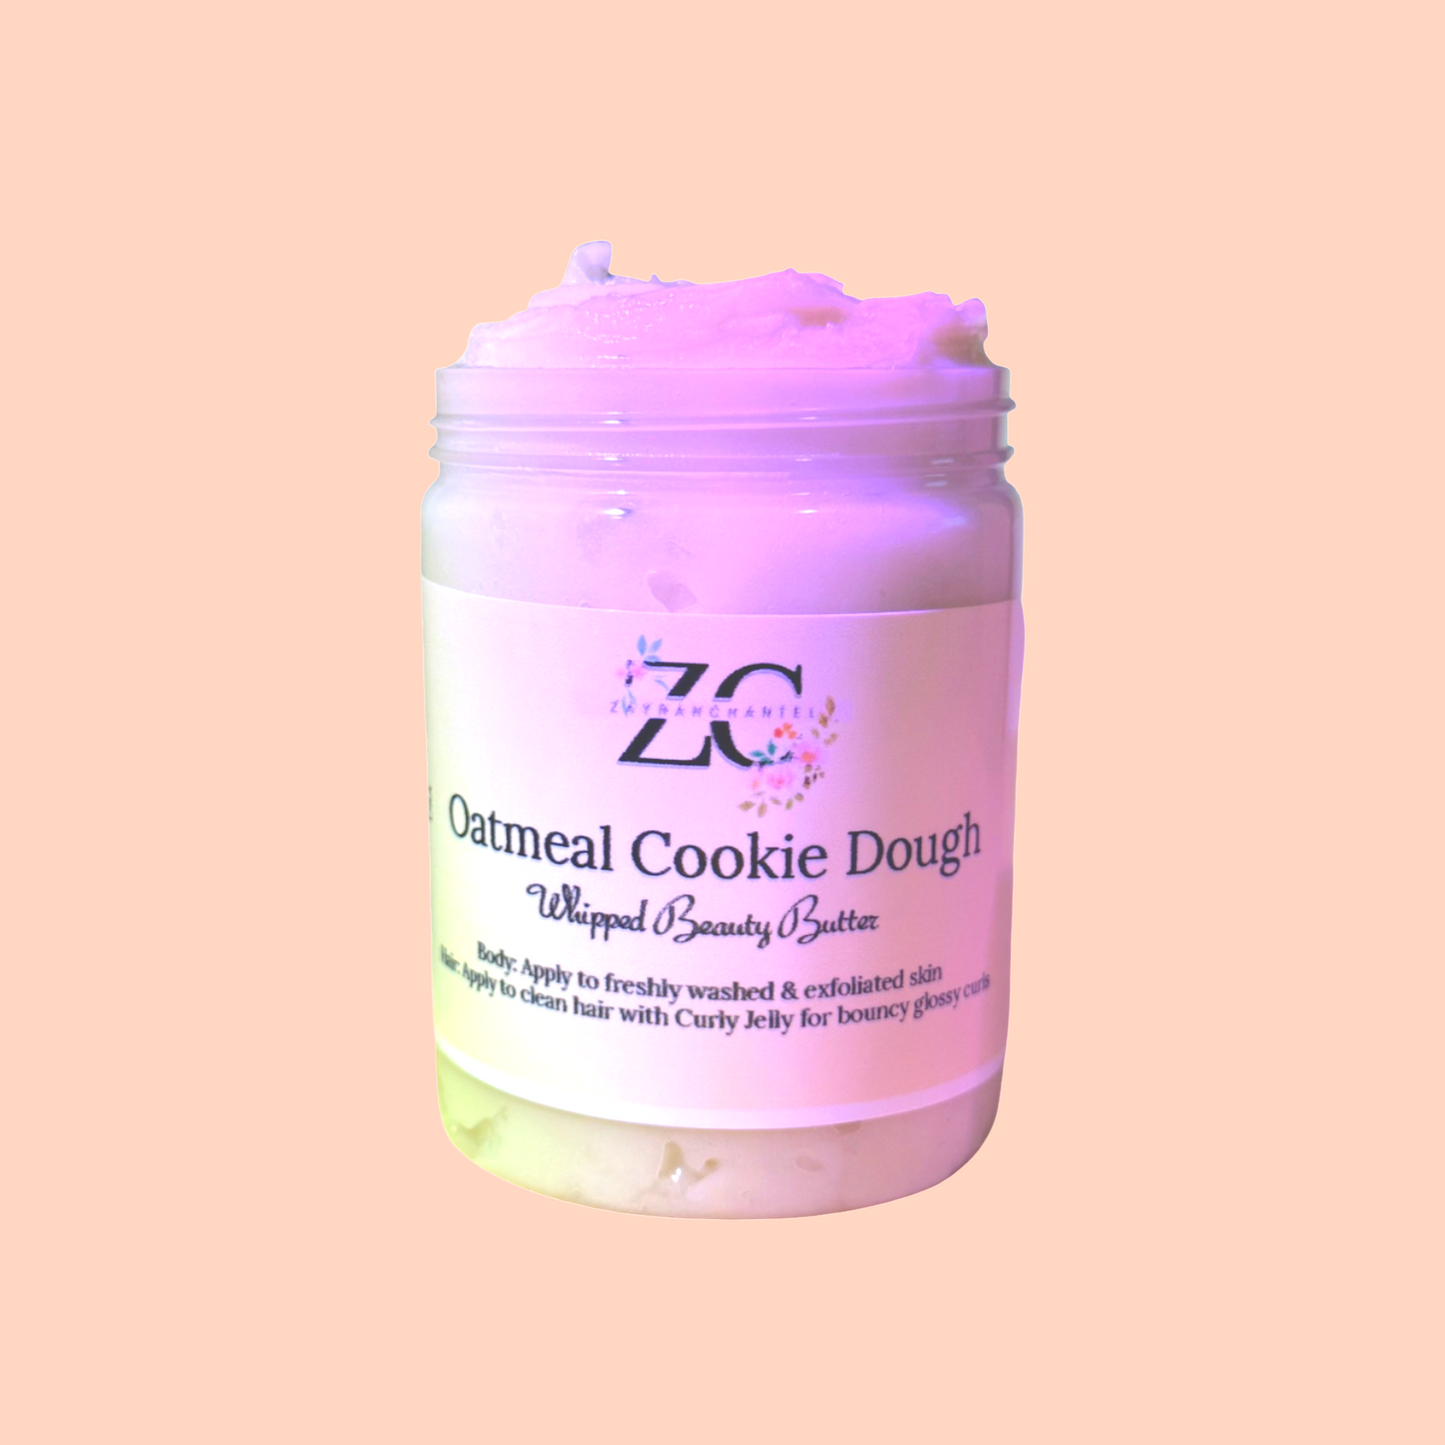 Oatmeal Cookie Dough Beauty Butter